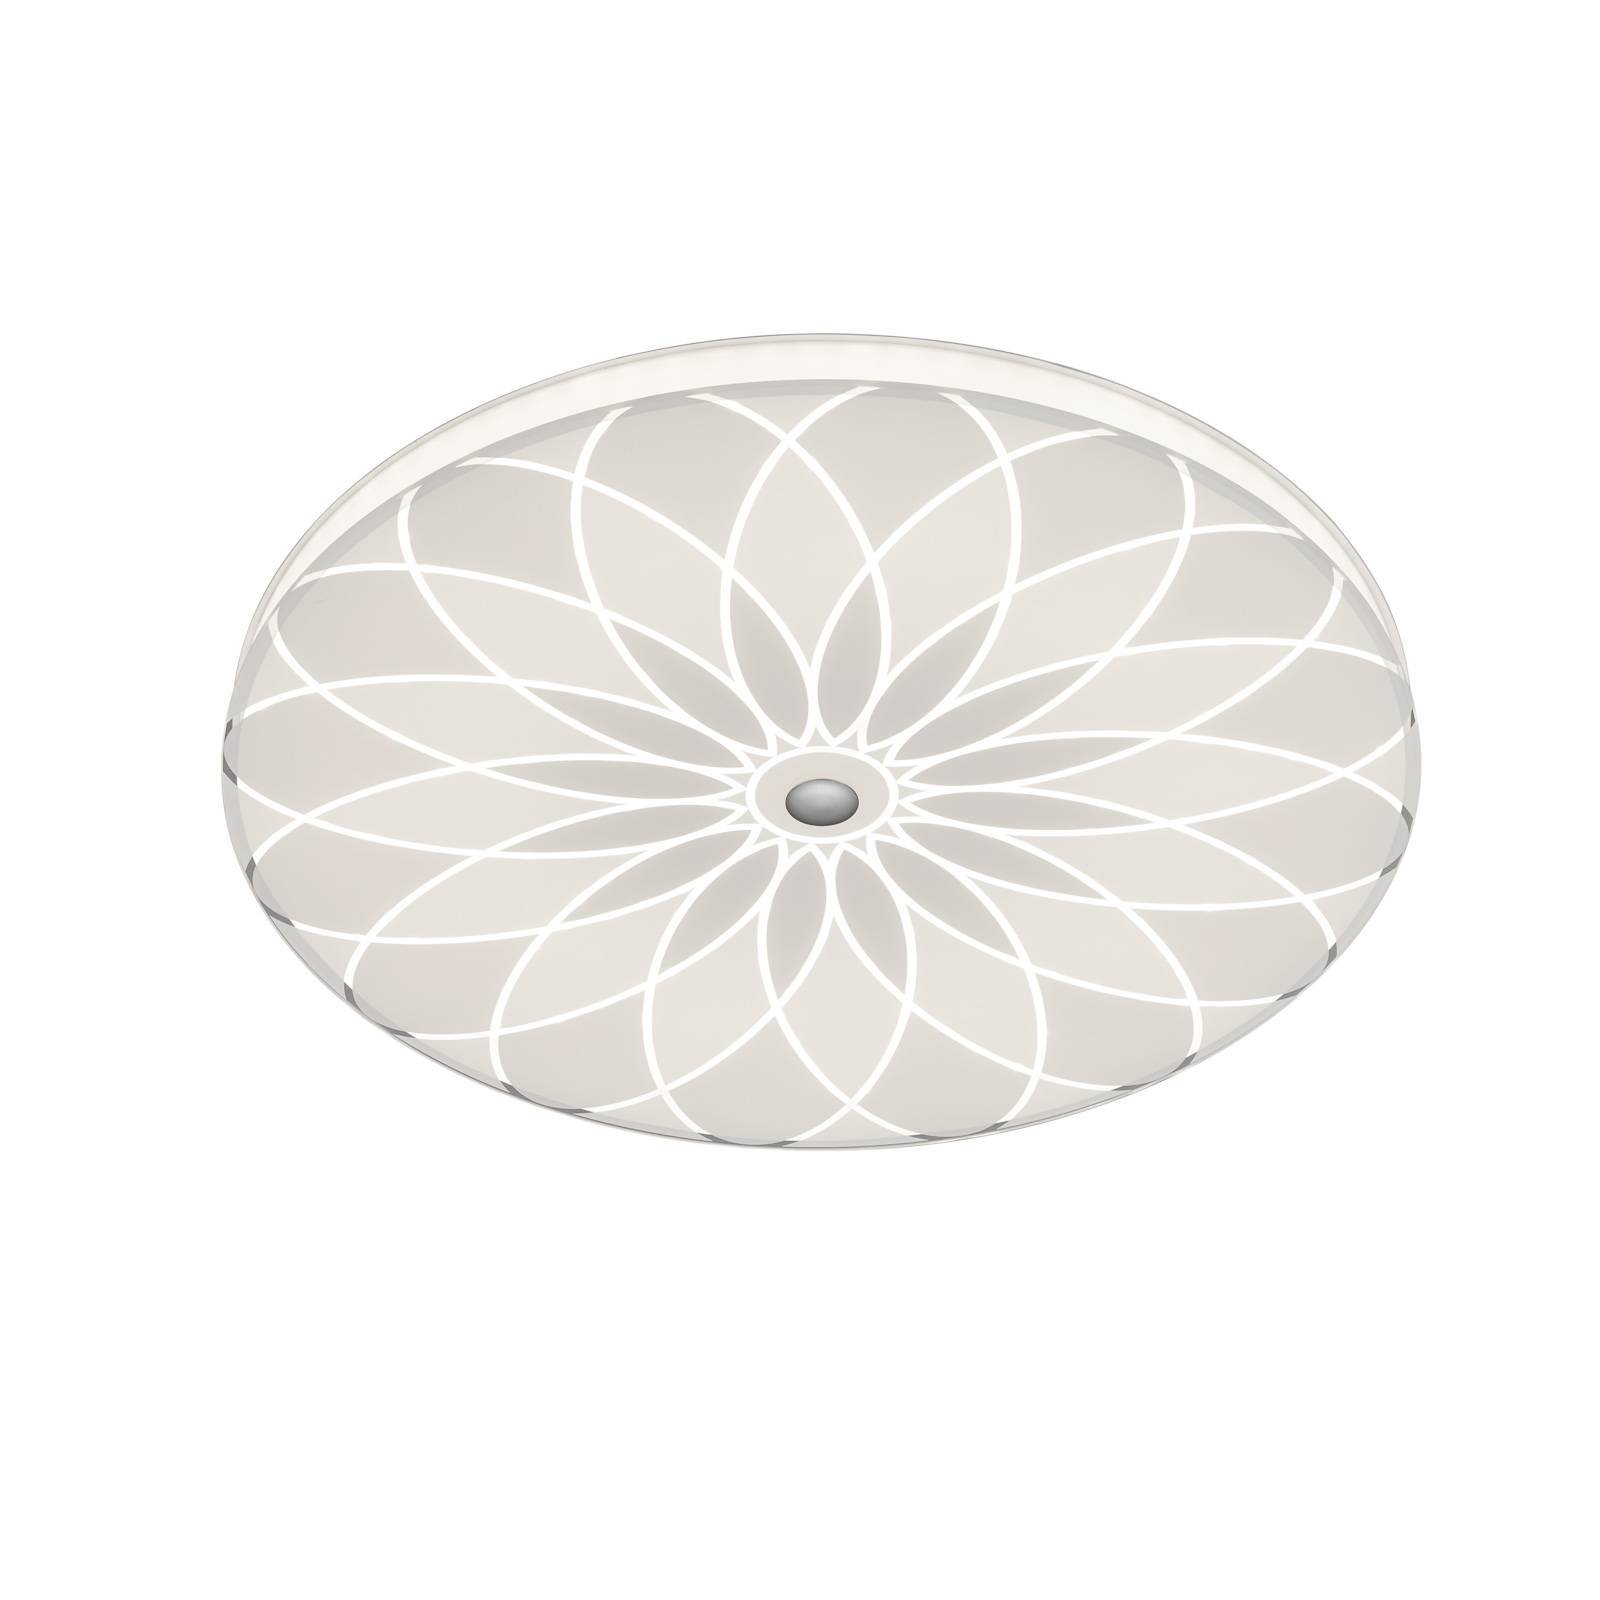 BANKAMP Mandala LED lámpa virág, Ø 42 cm